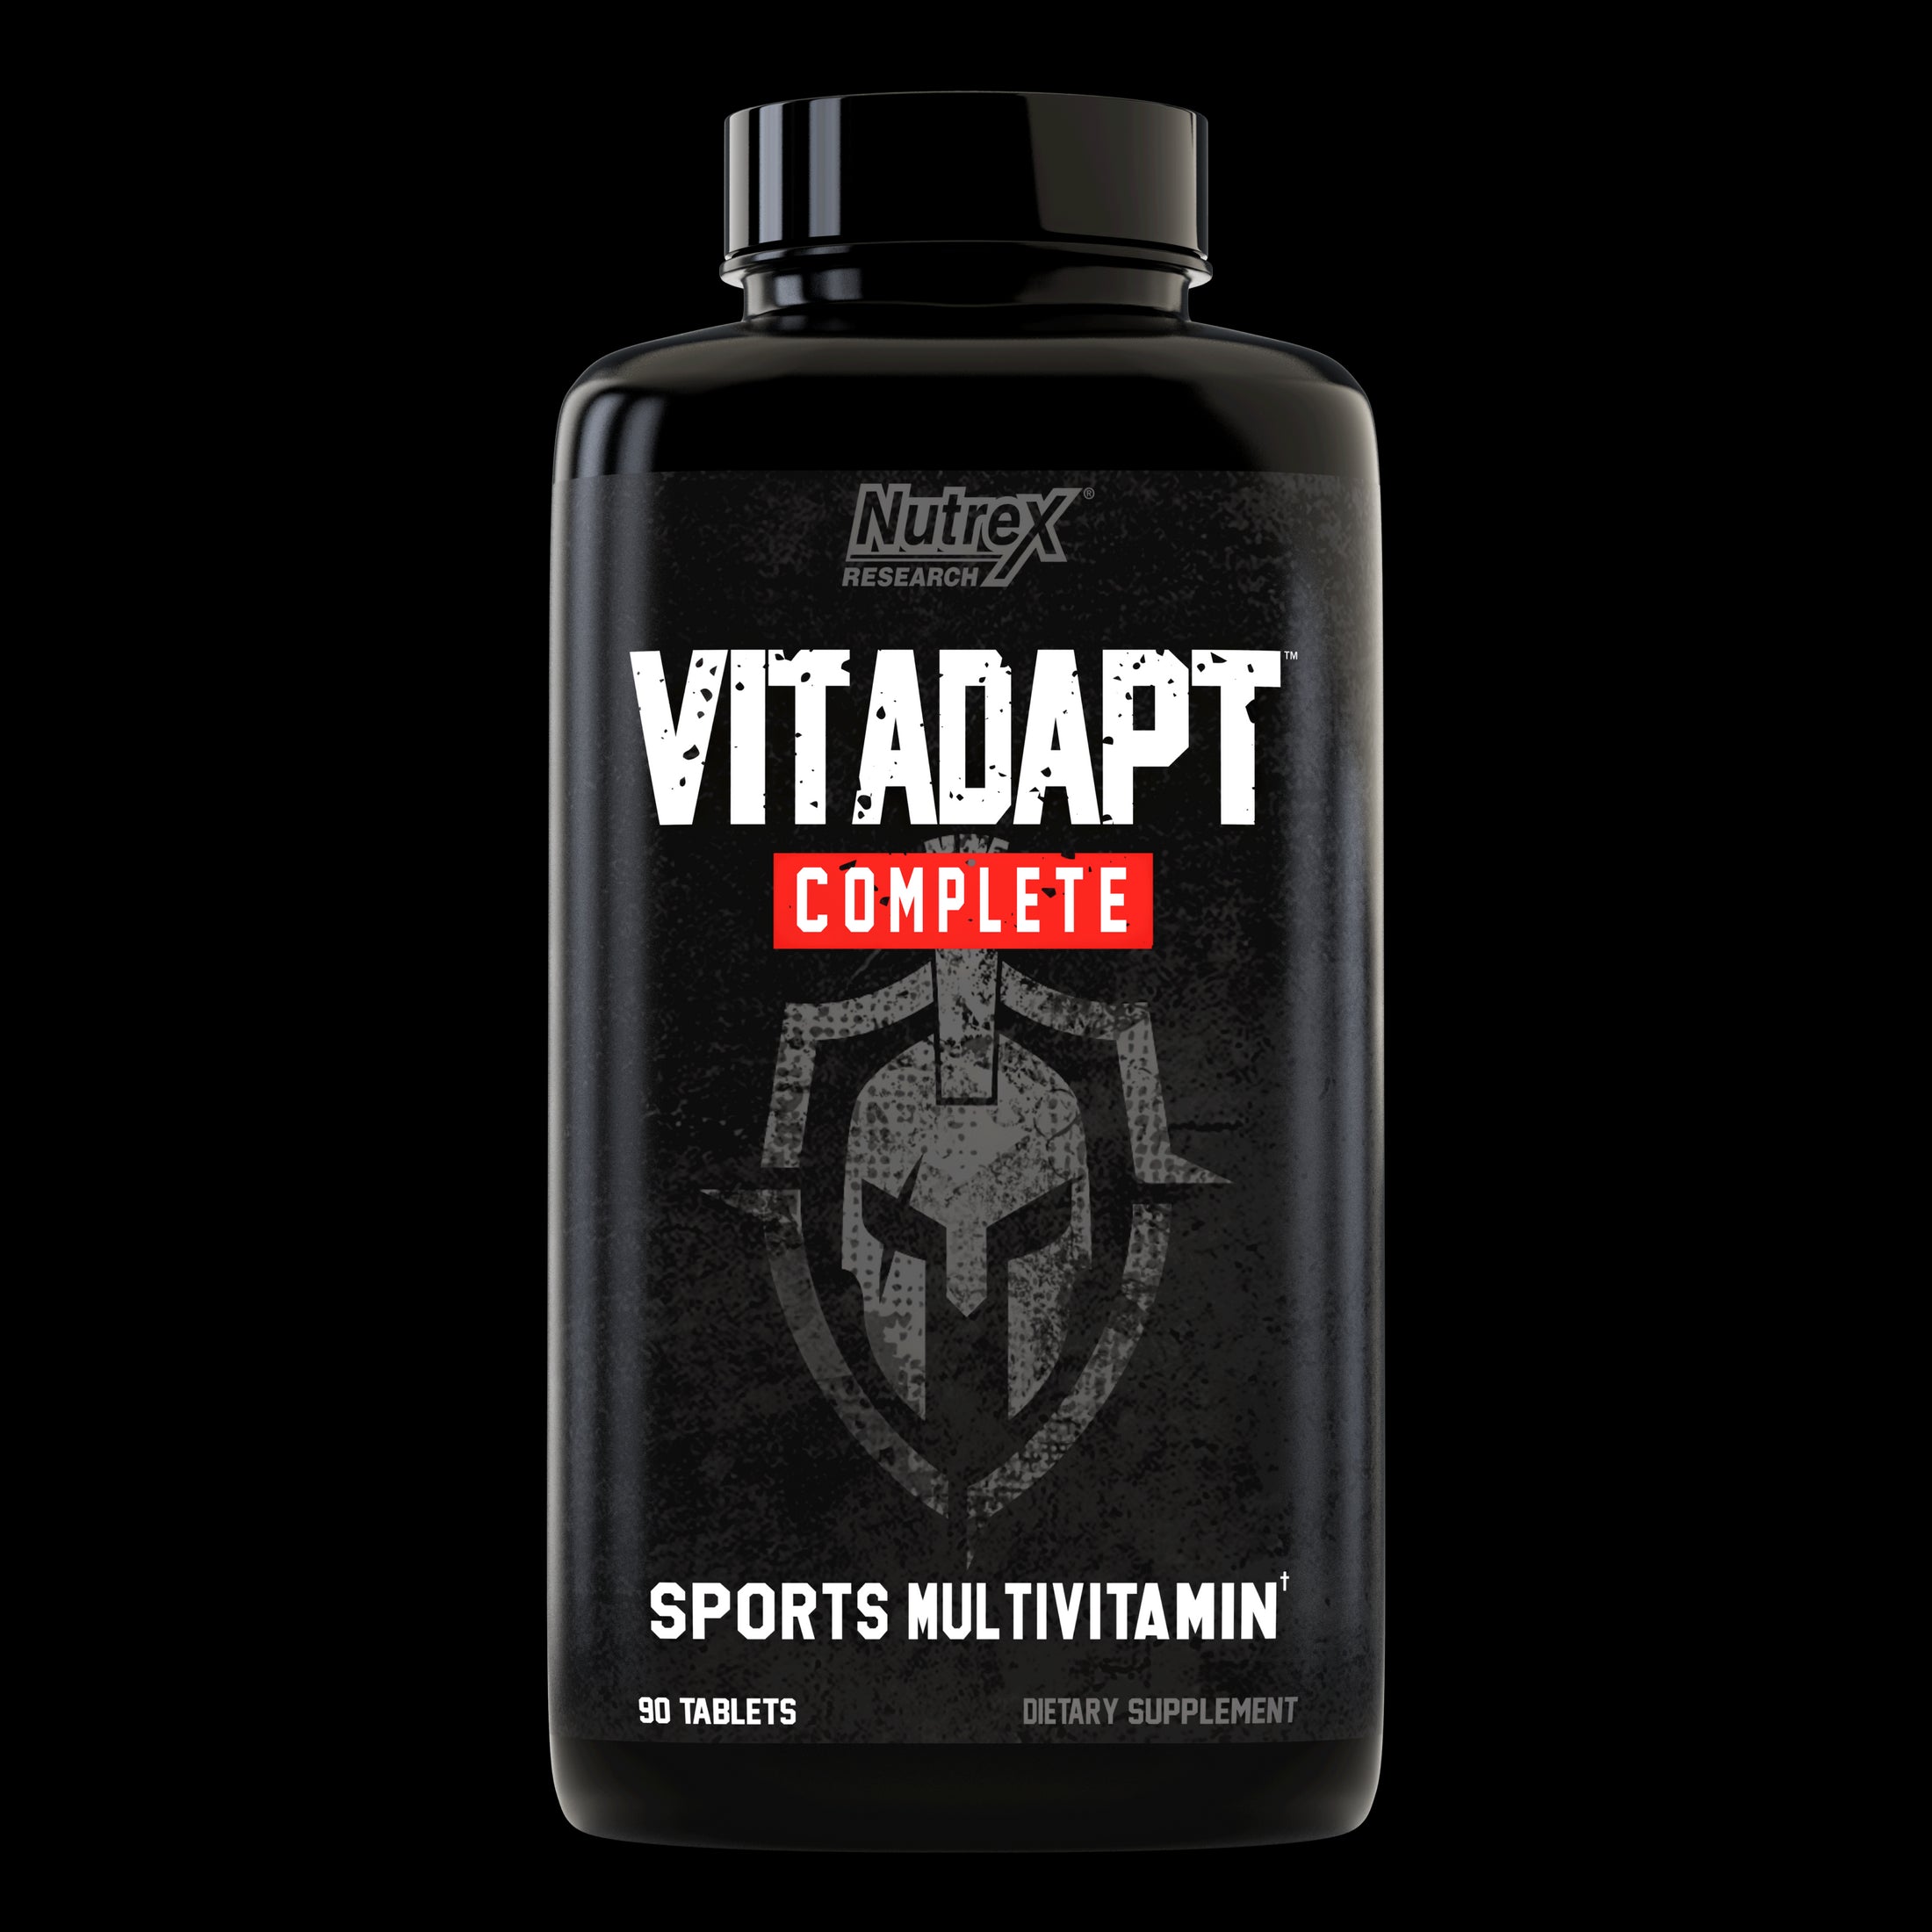 Nutrex Vitadapt Sport Vitamin, Viên uống Vitamin tổng hợp cho Nam giới 90